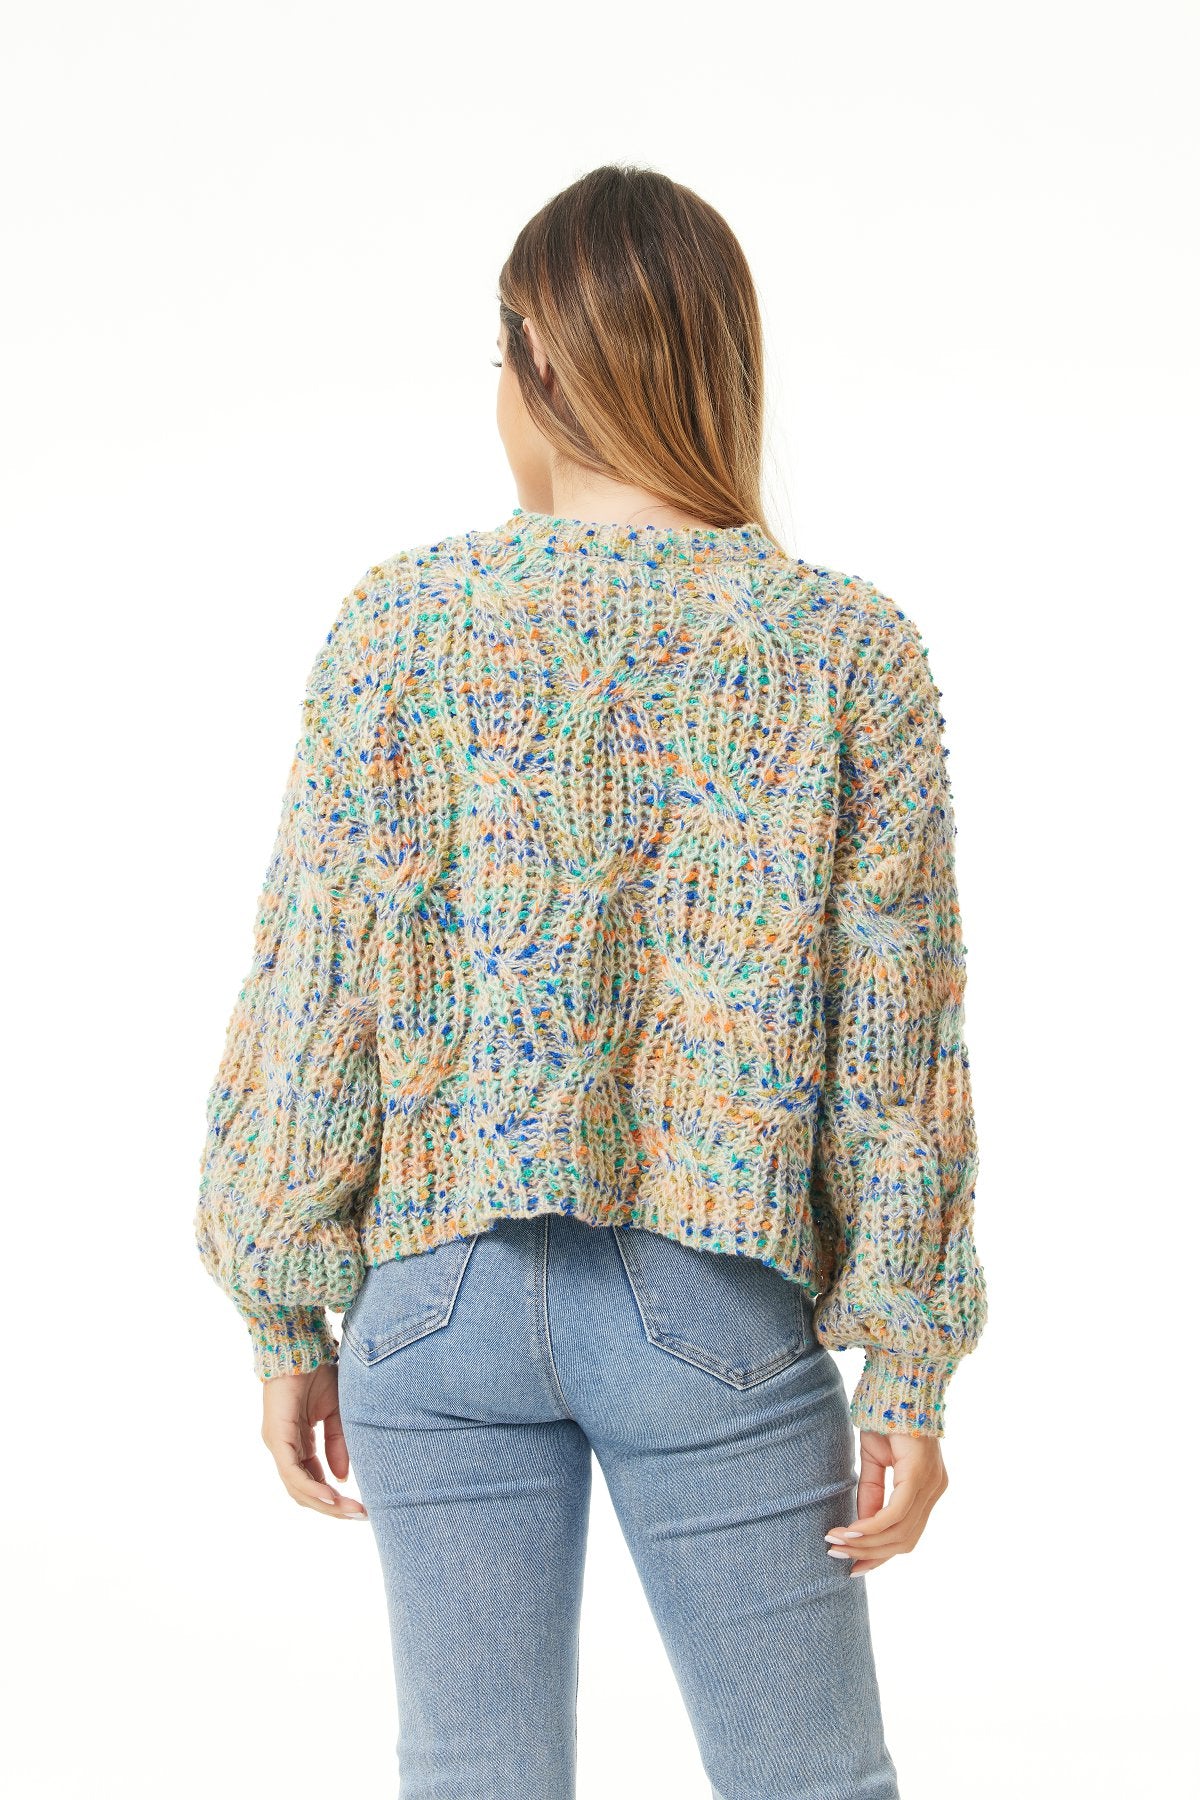 Confetti Knit - Crewneck Sweater